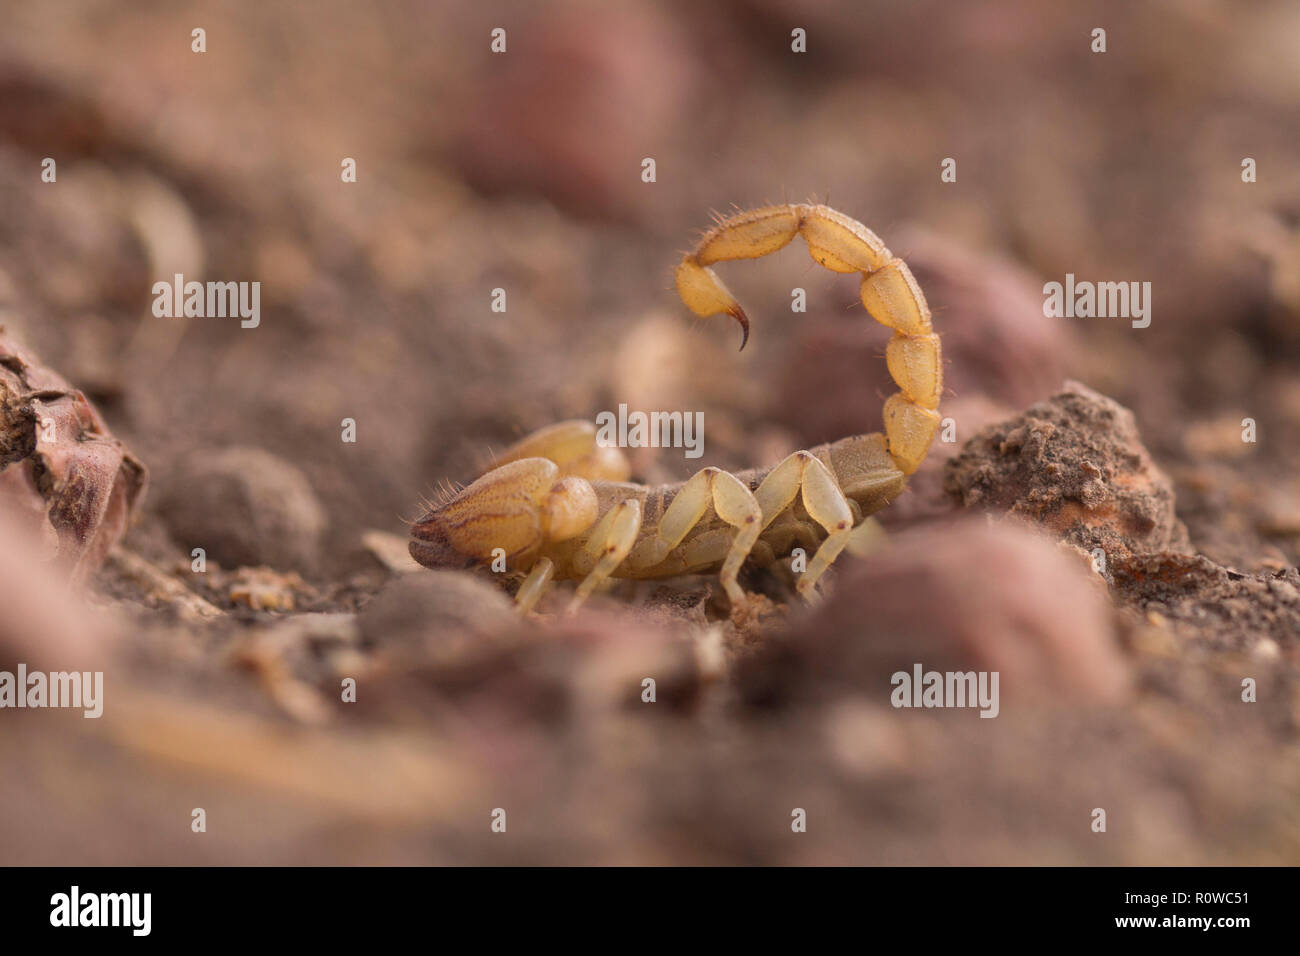 Or Israël (Scorpion Scorpio maurus palmatus). Scorpio Maurus est une espèce d'Afrique du Nord et du Moyen-Orient scorpion, également connu sous le nom de la grande-Cla Banque D'Images